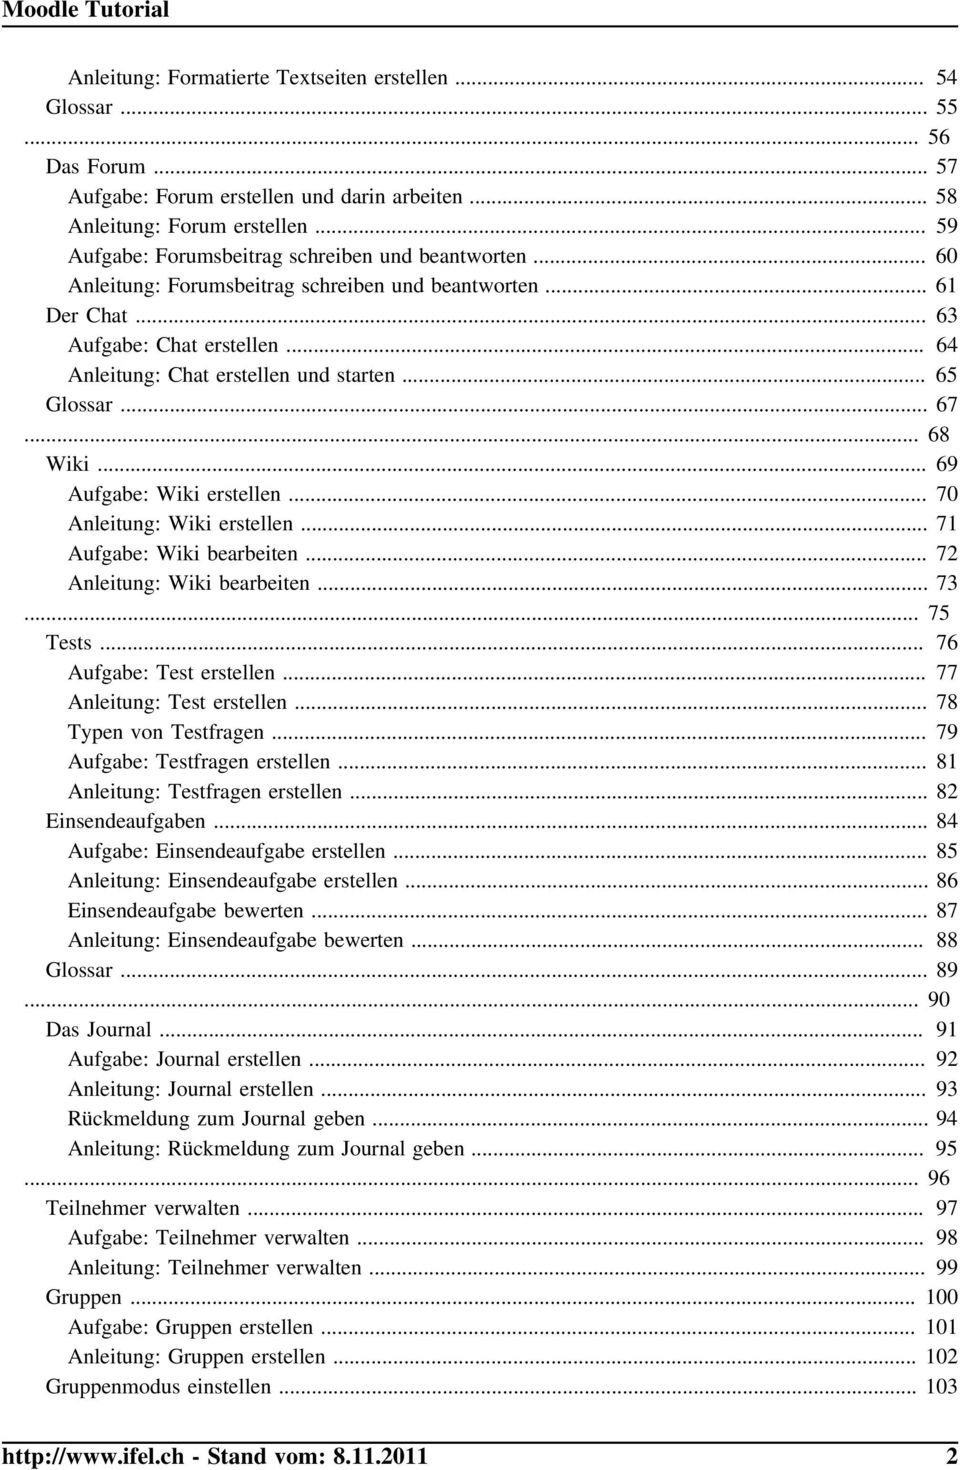 .. 65 Glossar... 67... 68 Wiki... 69 Aufgabe: Wiki erstellen... 70 Anleitung: Wiki erstellen... 71 Aufgabe: Wiki bearbeiten... 72 Anleitung: Wiki bearbeiten... 73... 75 Tests.